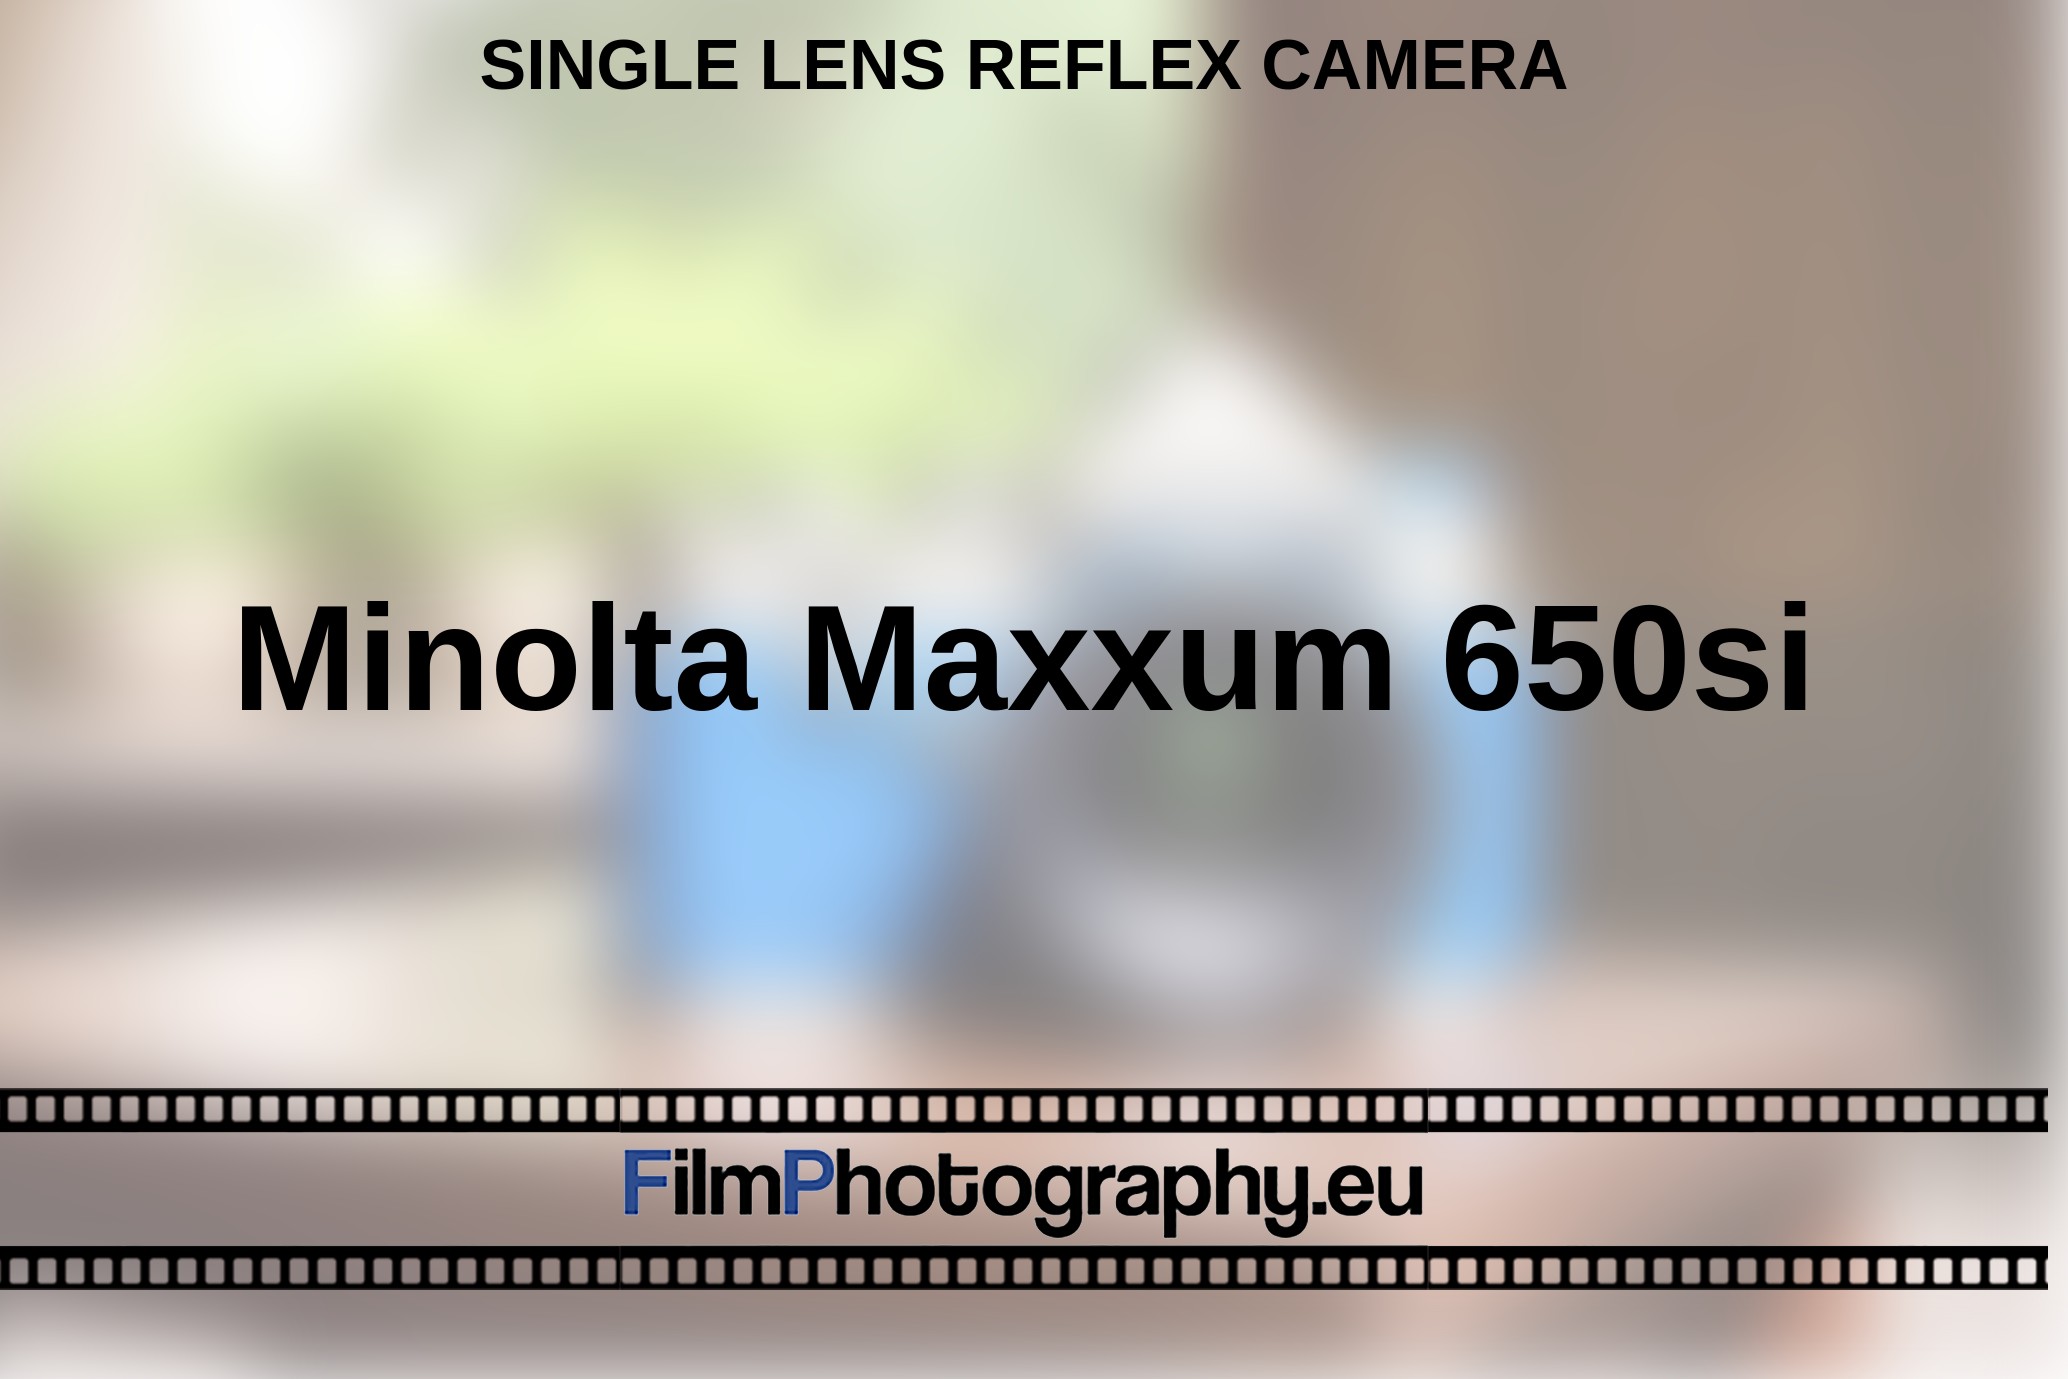 Minolta-Maxxum-650si-single-lens-reflex-camera-bnv.jpg